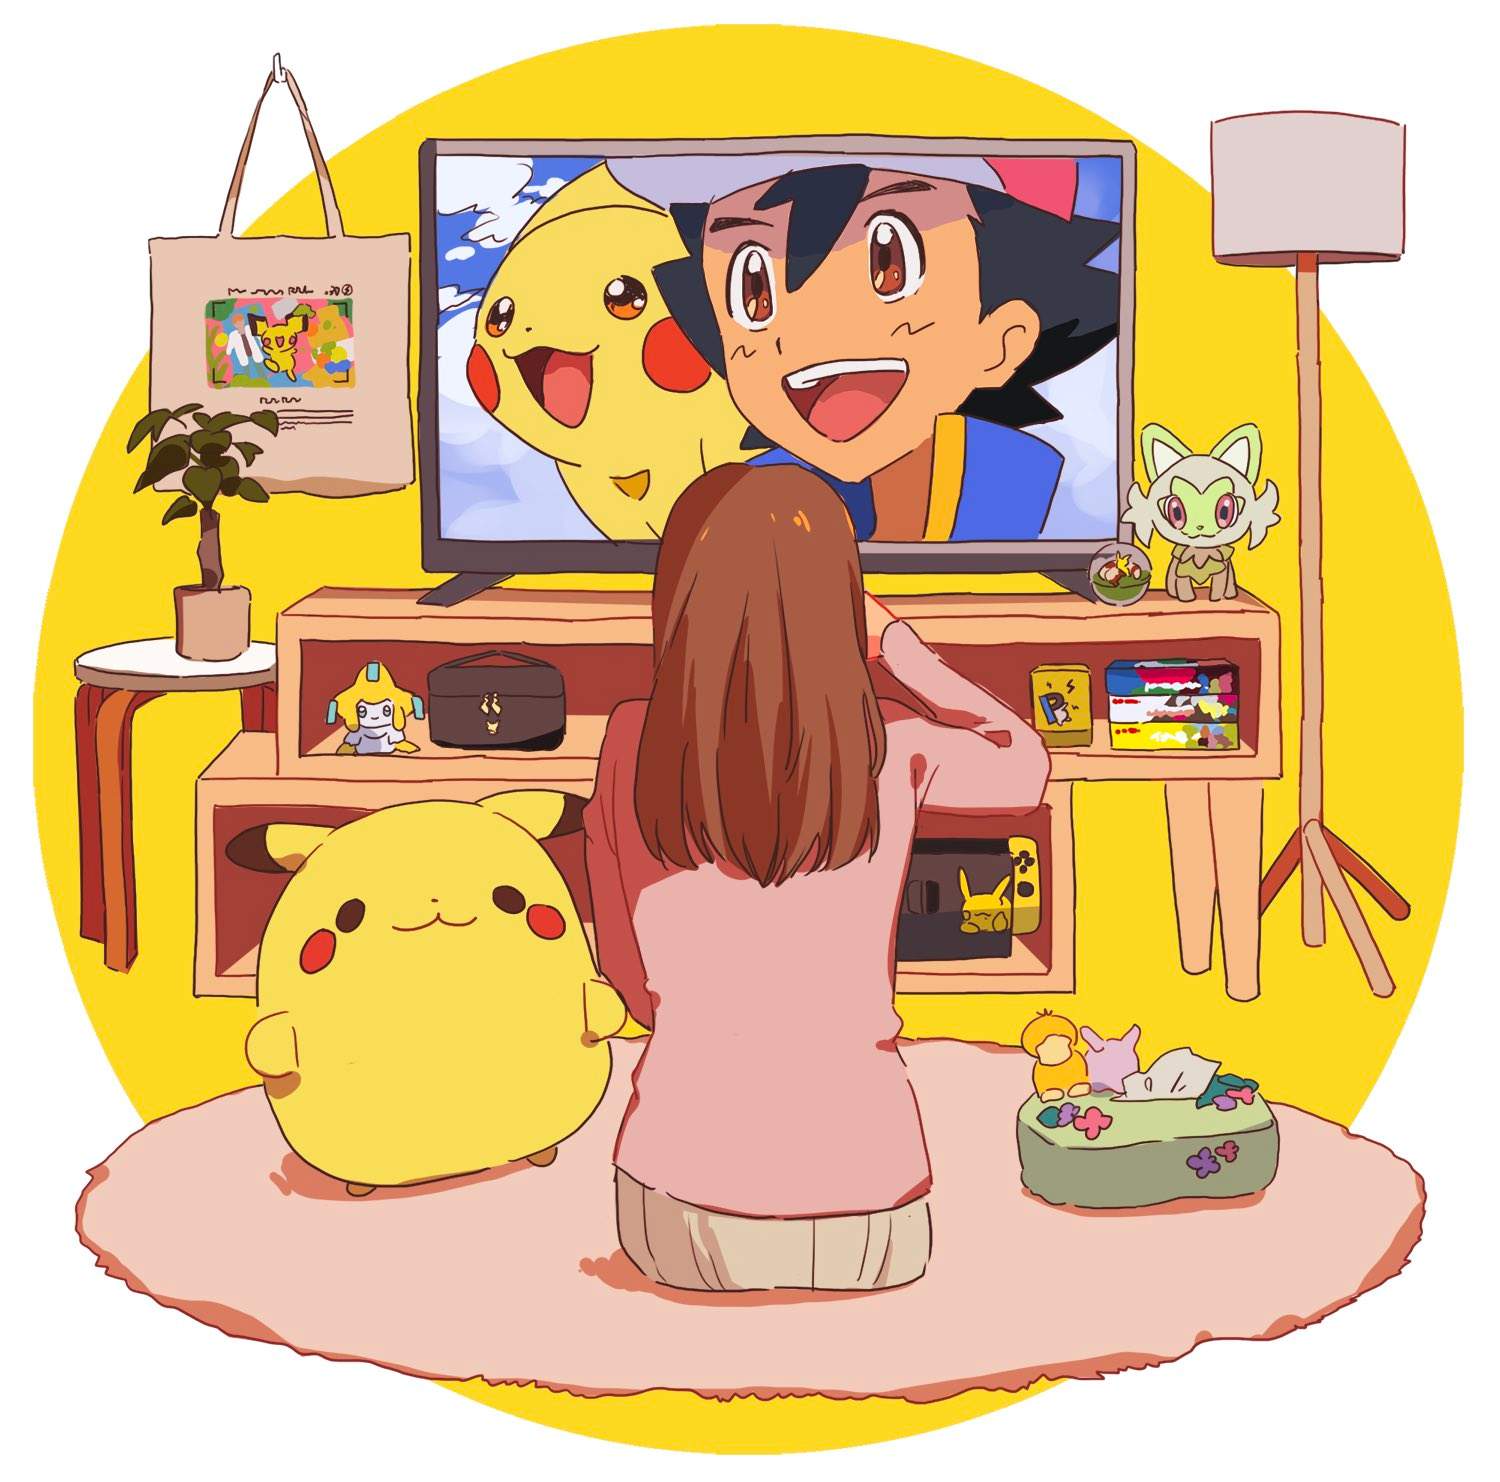 Pokémon: Saiba o que acontece com Ash e Pikachu no final